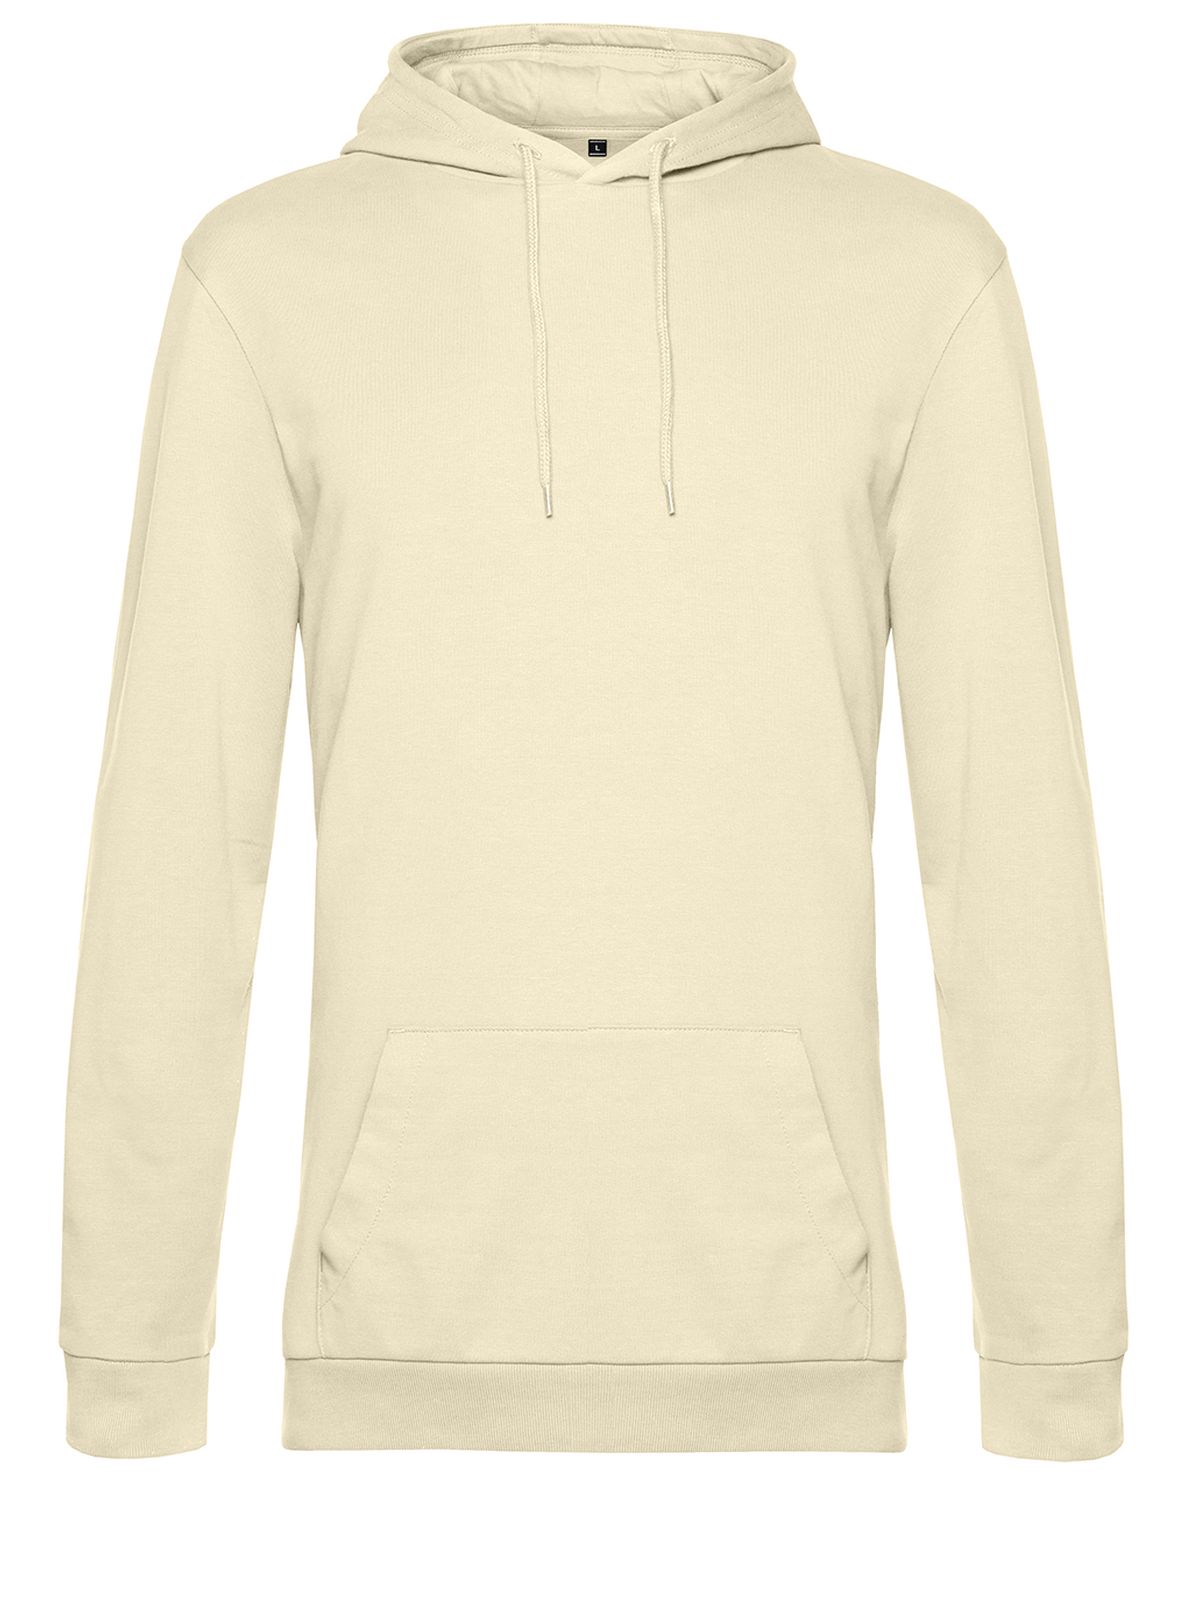 hoodie-pale-yellow.webp